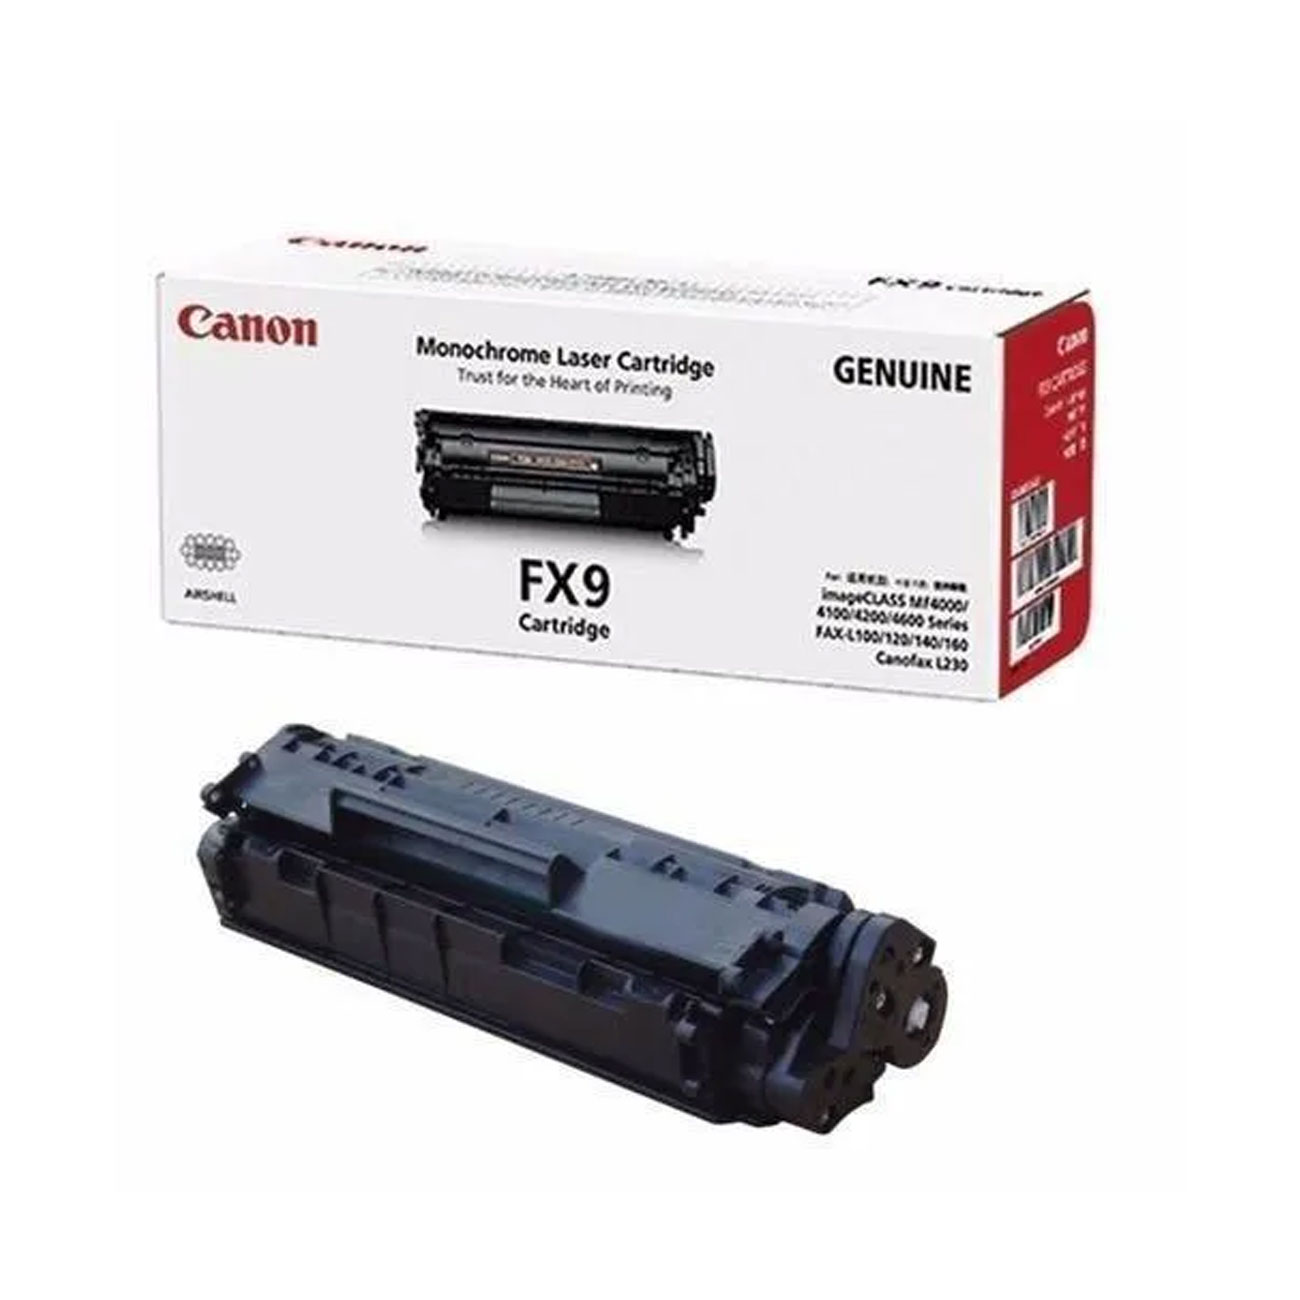 کارتریج تونر کانن Canon FX9